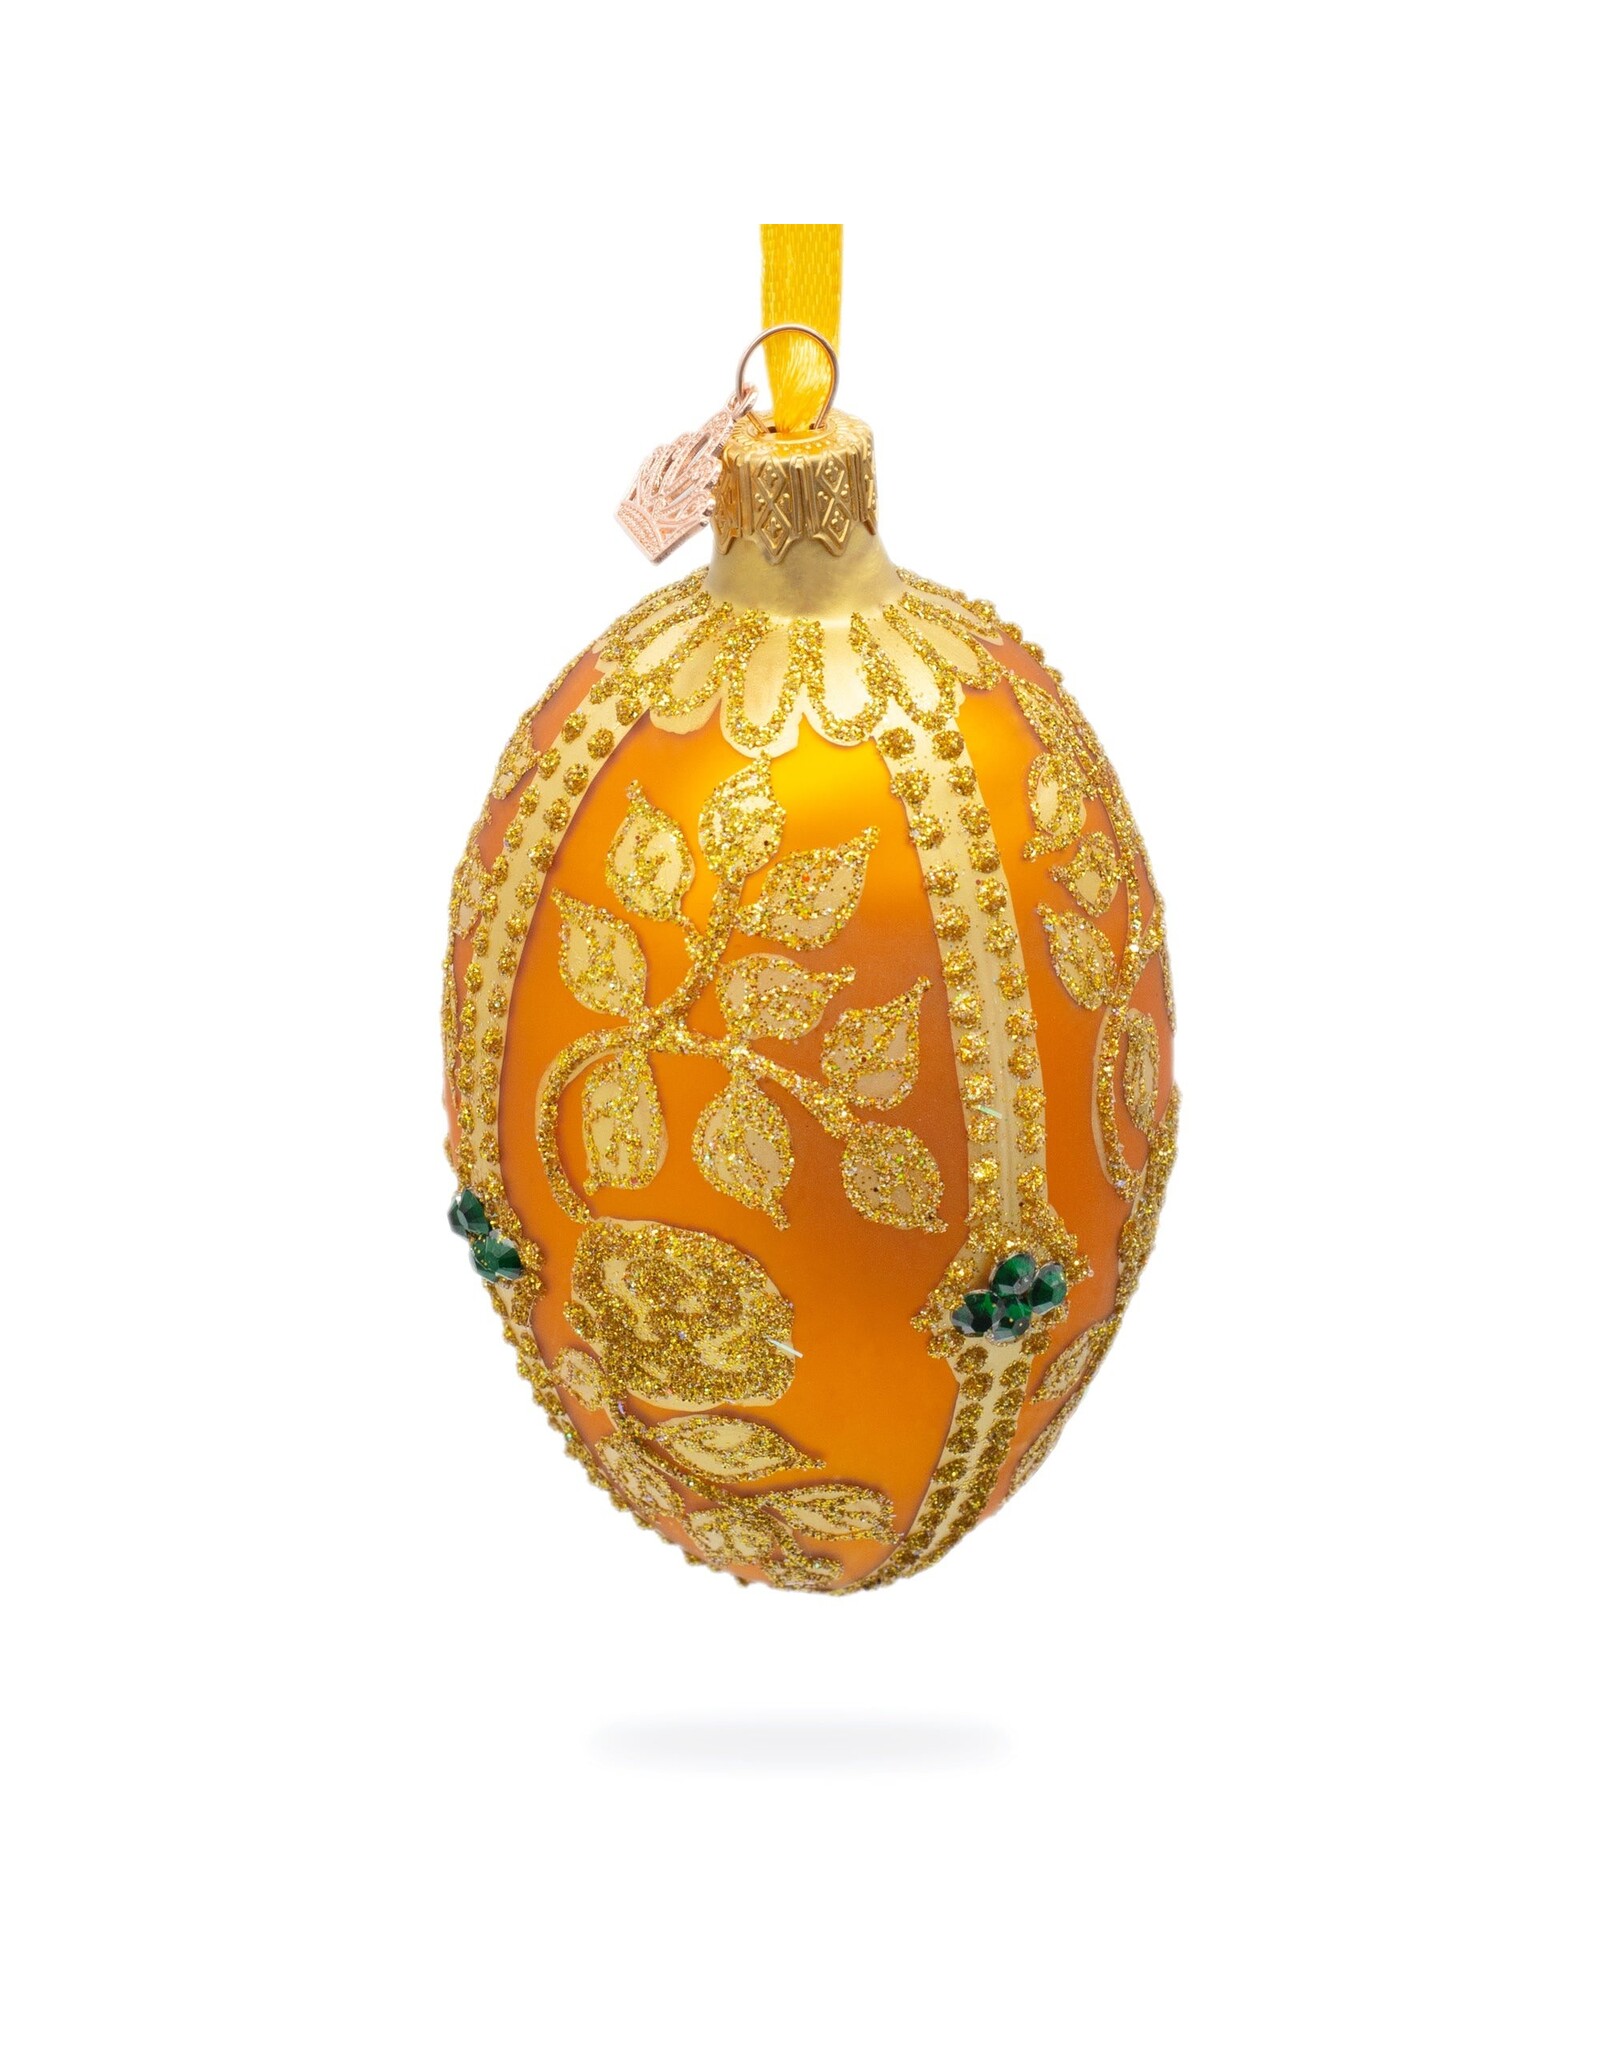 Glittered Gold Leaves on Gold Glass Egg Ornament